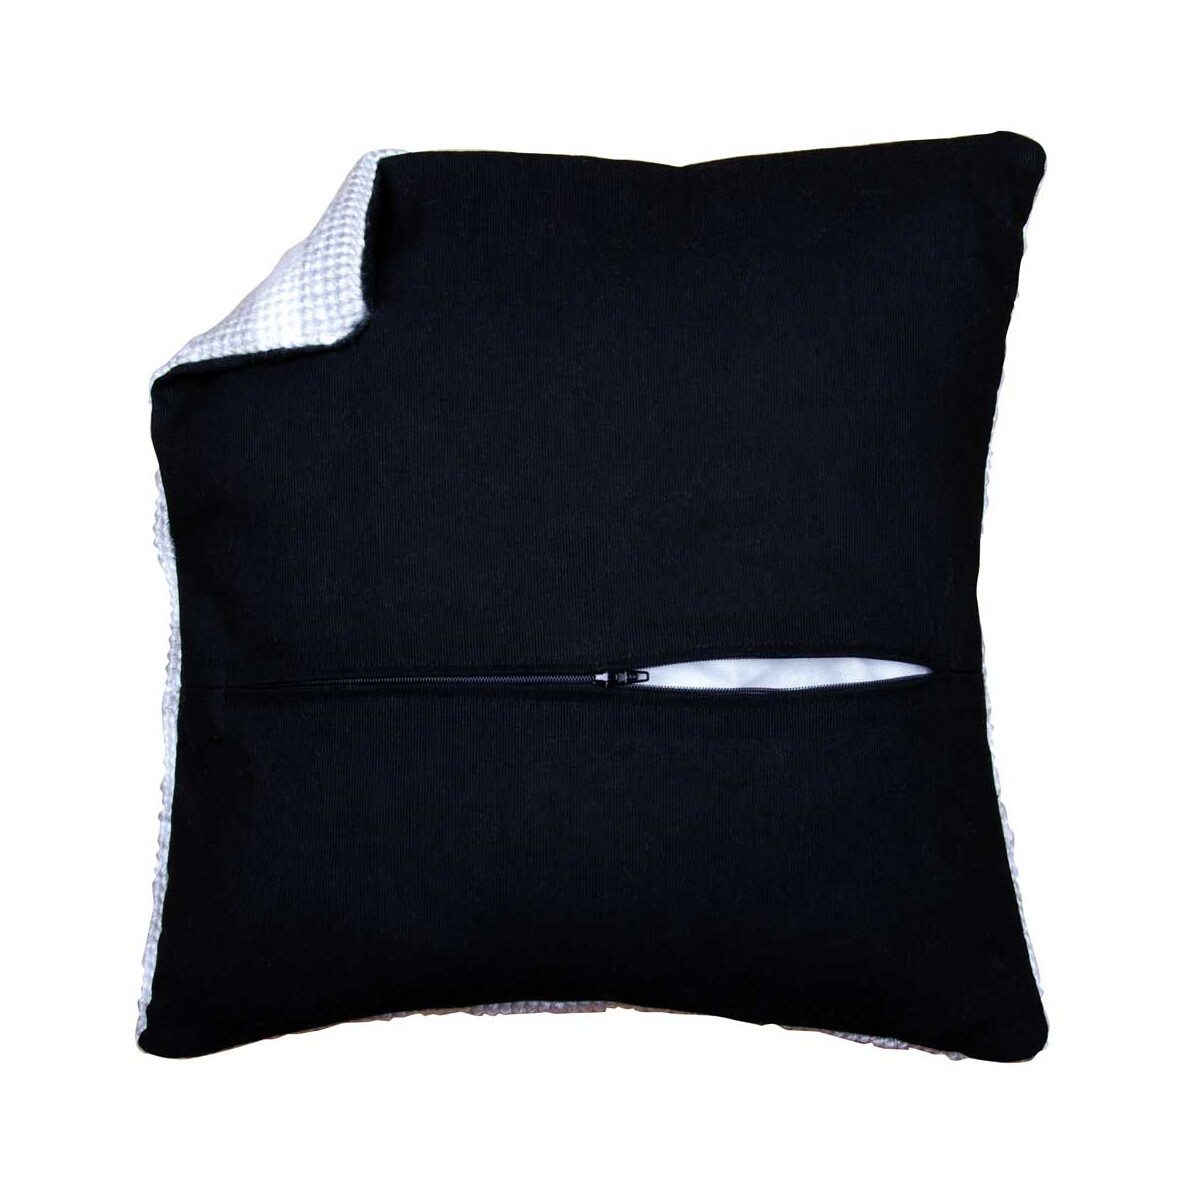 Задник подушки с молнией – черный, 45 x 45 см